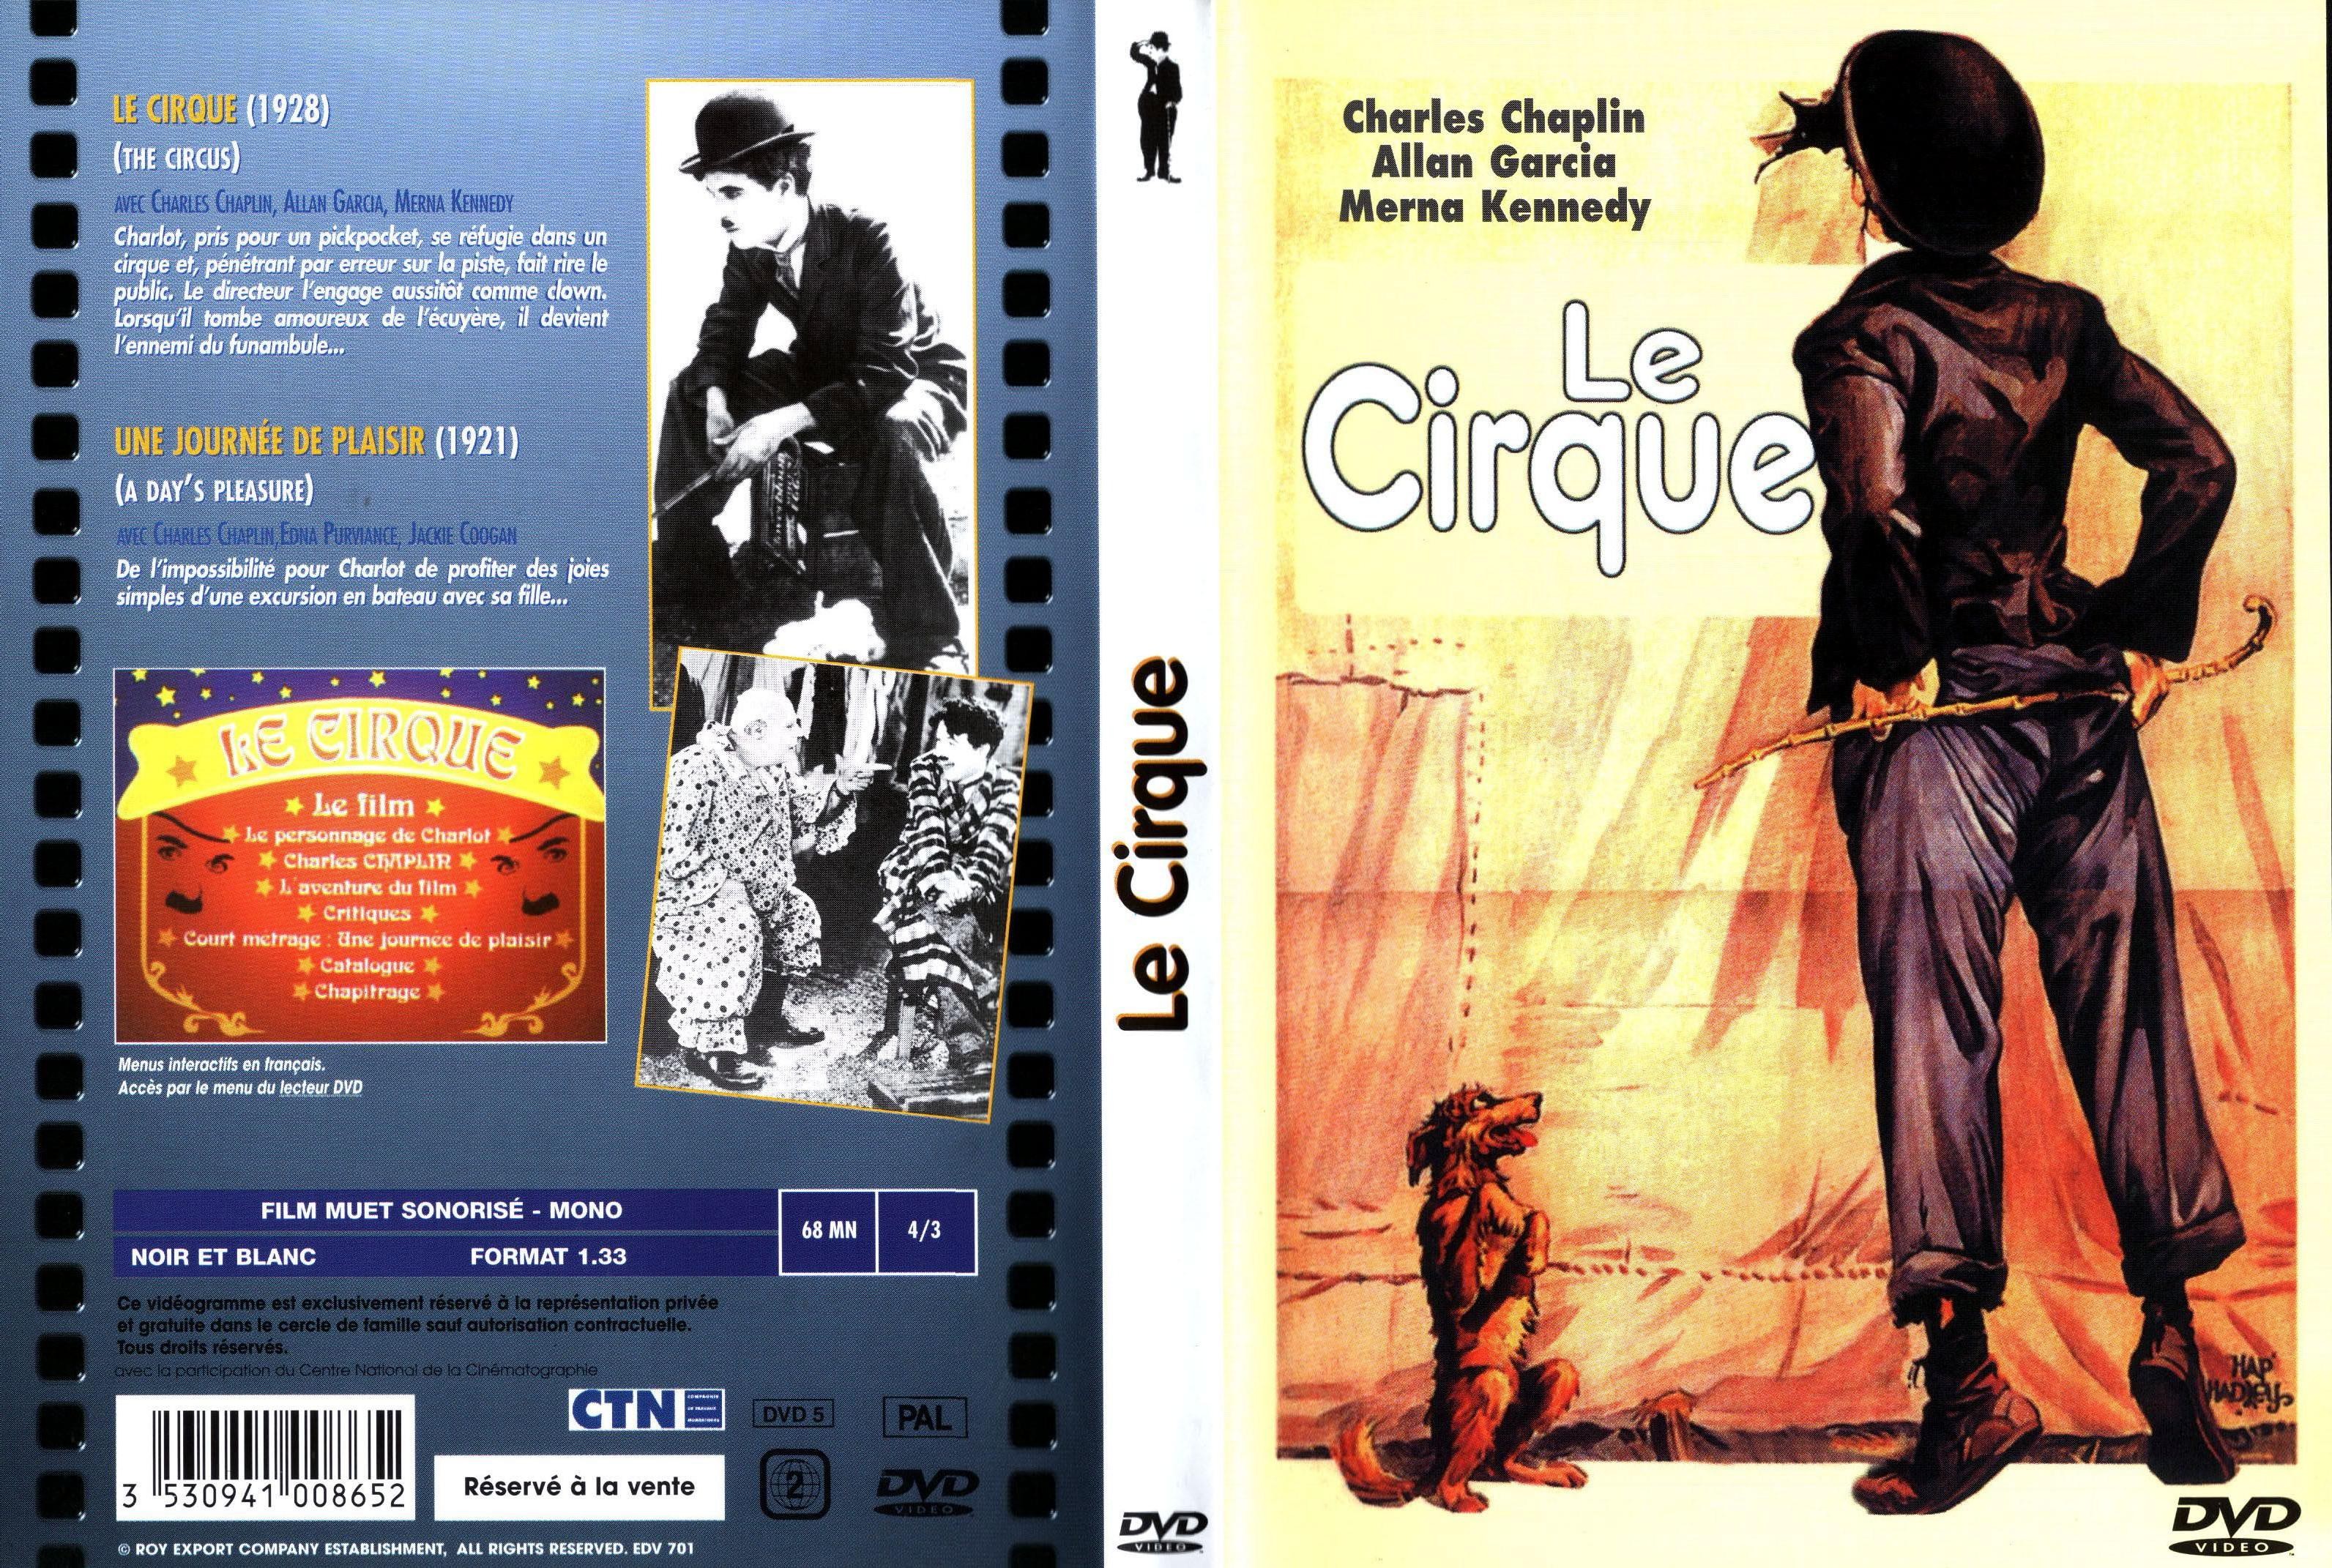 Jaquette DVD Le cirque